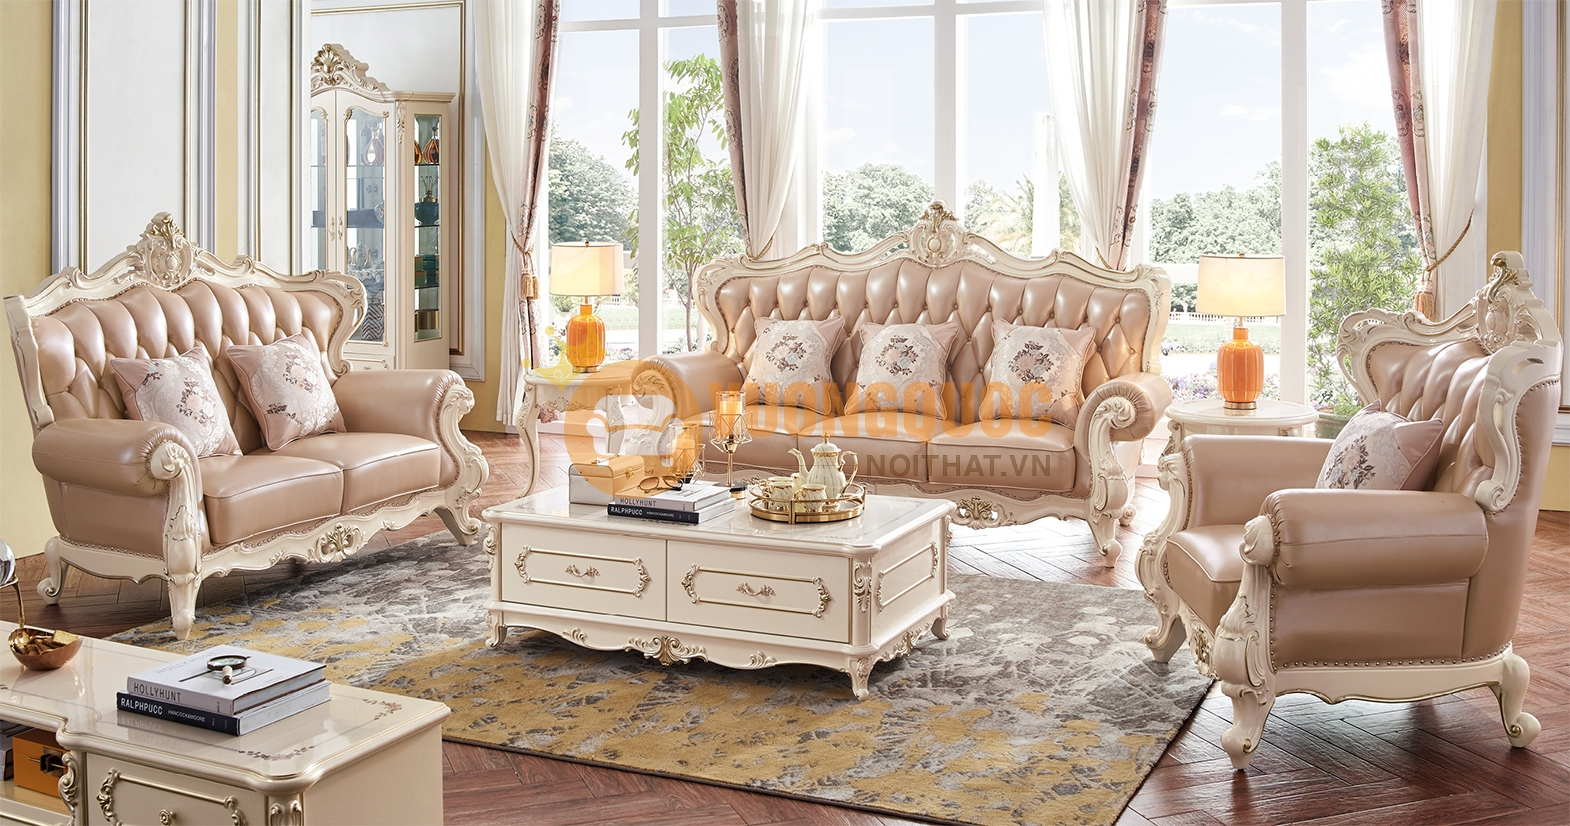 Sofa tân cổ điển pháp mang đến nét sang trọng và đẳng cấp cho không gian sống của bạn. Với sự kết hợp tinh tế giữa vải và hoa văn, các chiếc sofa này đã trở thành một trong những lựa chọn hàng đầu cho các căn hộ cao cấp. Hãy xem hình ảnh để tìm hiểu thêm về sản phẩm này.